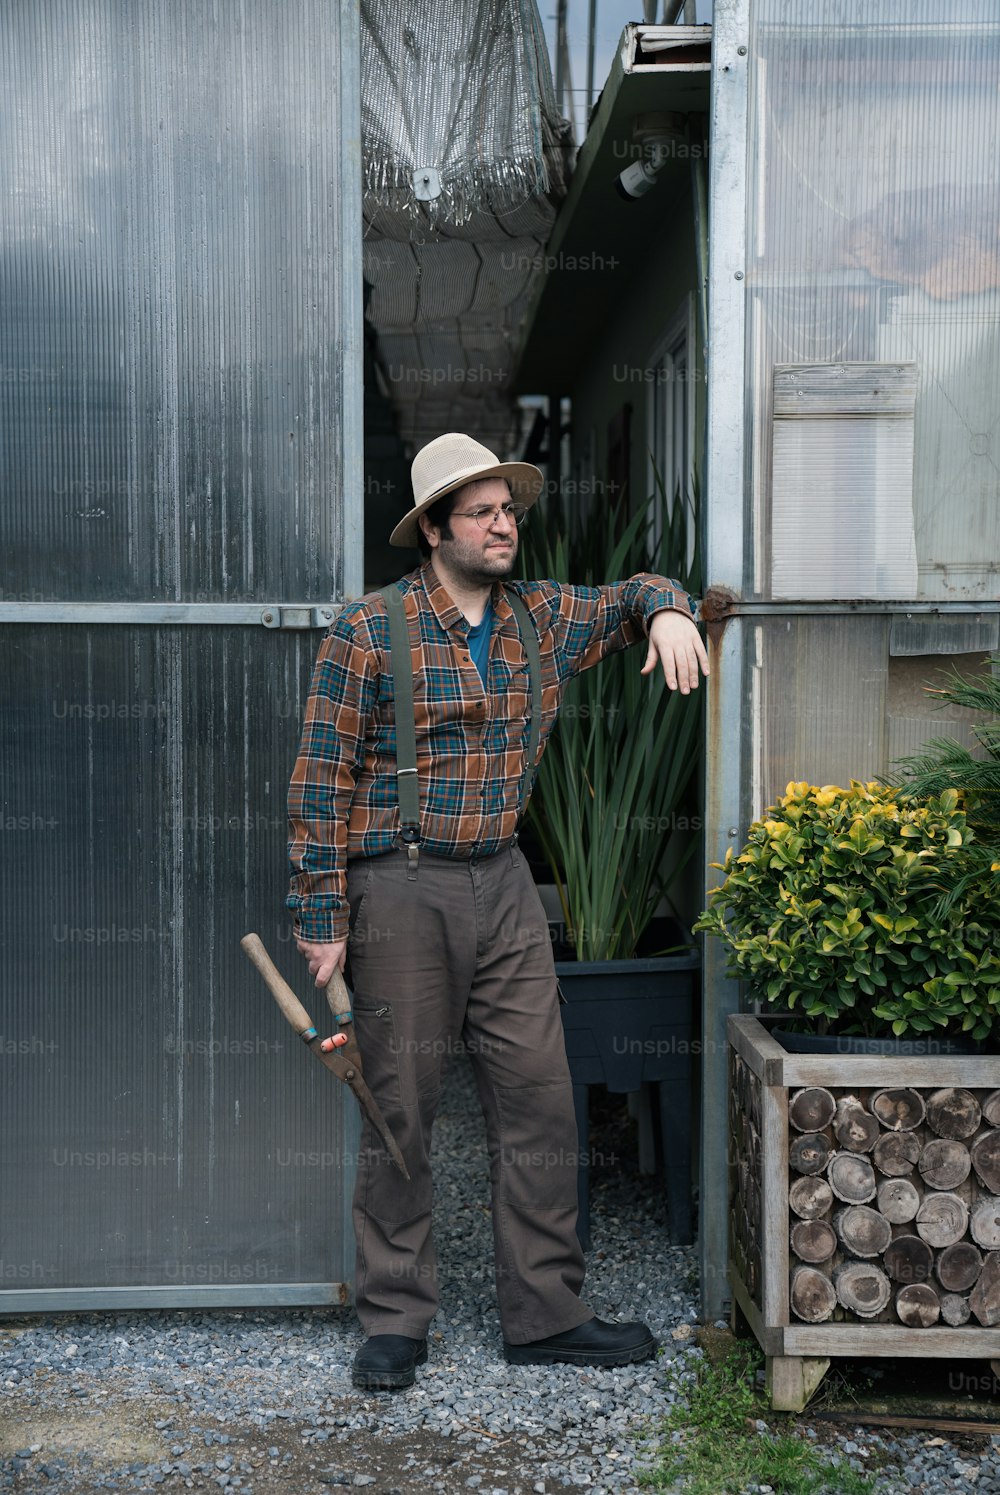 온실 앞에 서 있는 모자와 작업복을 입은 남자